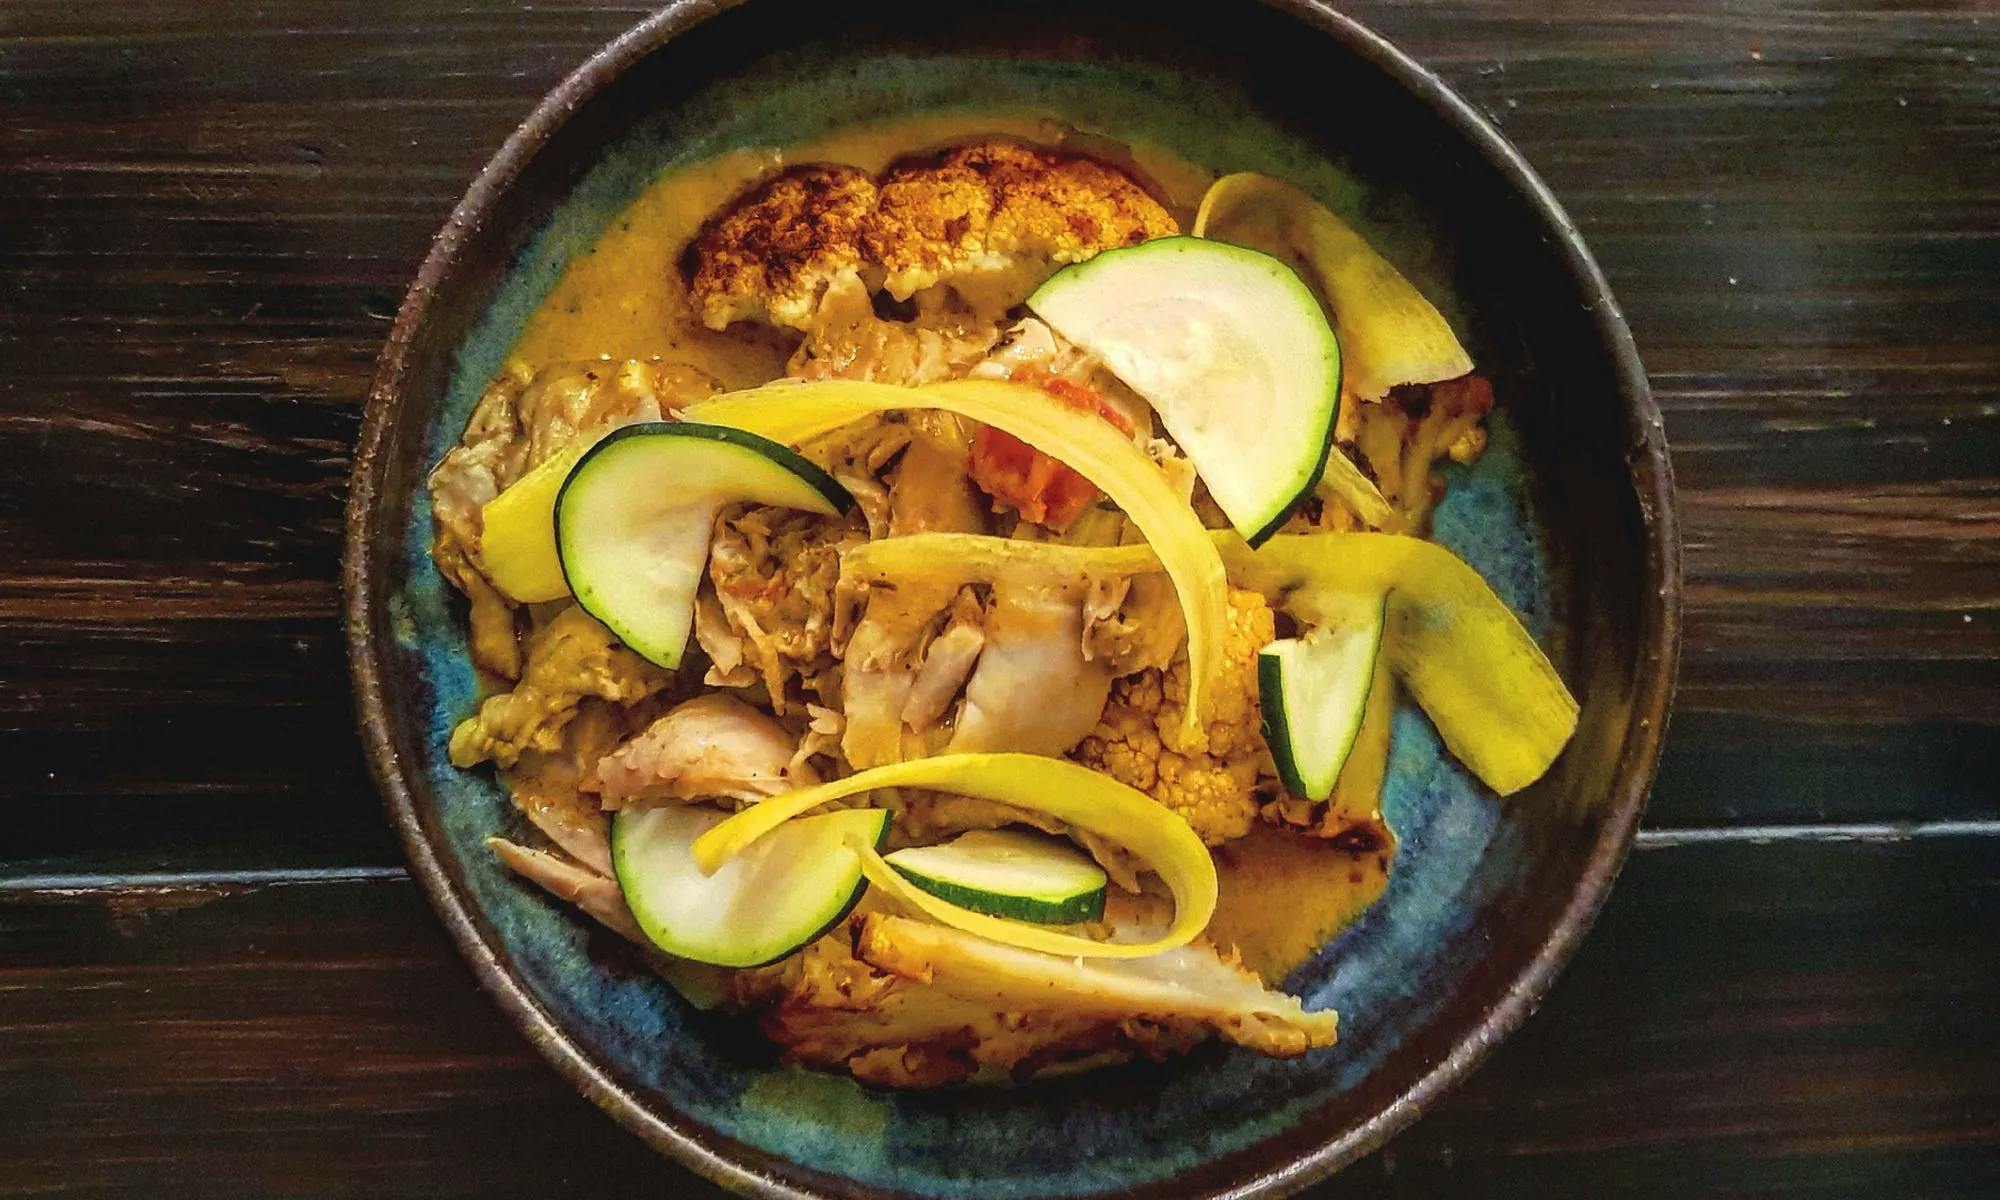 PÅ VÅR SPIS! - kyckling currygryta med helbakad blomkål och zucchini